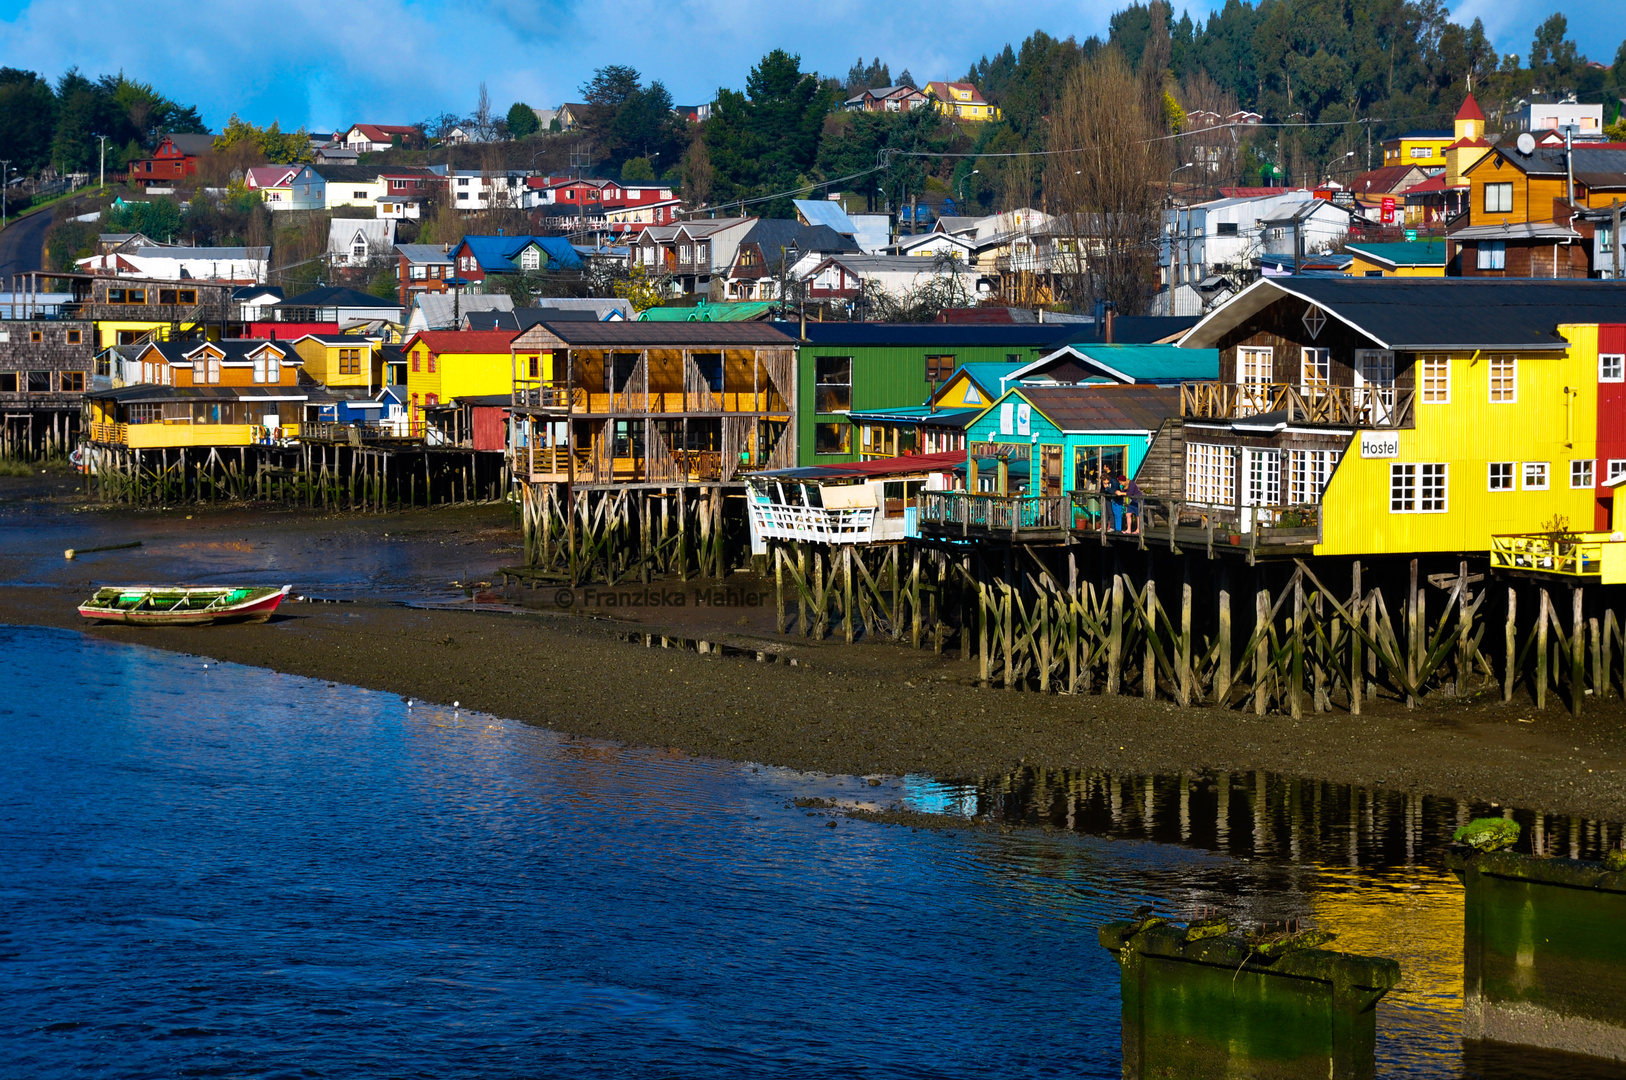 Chiloé's Colorful Capital City